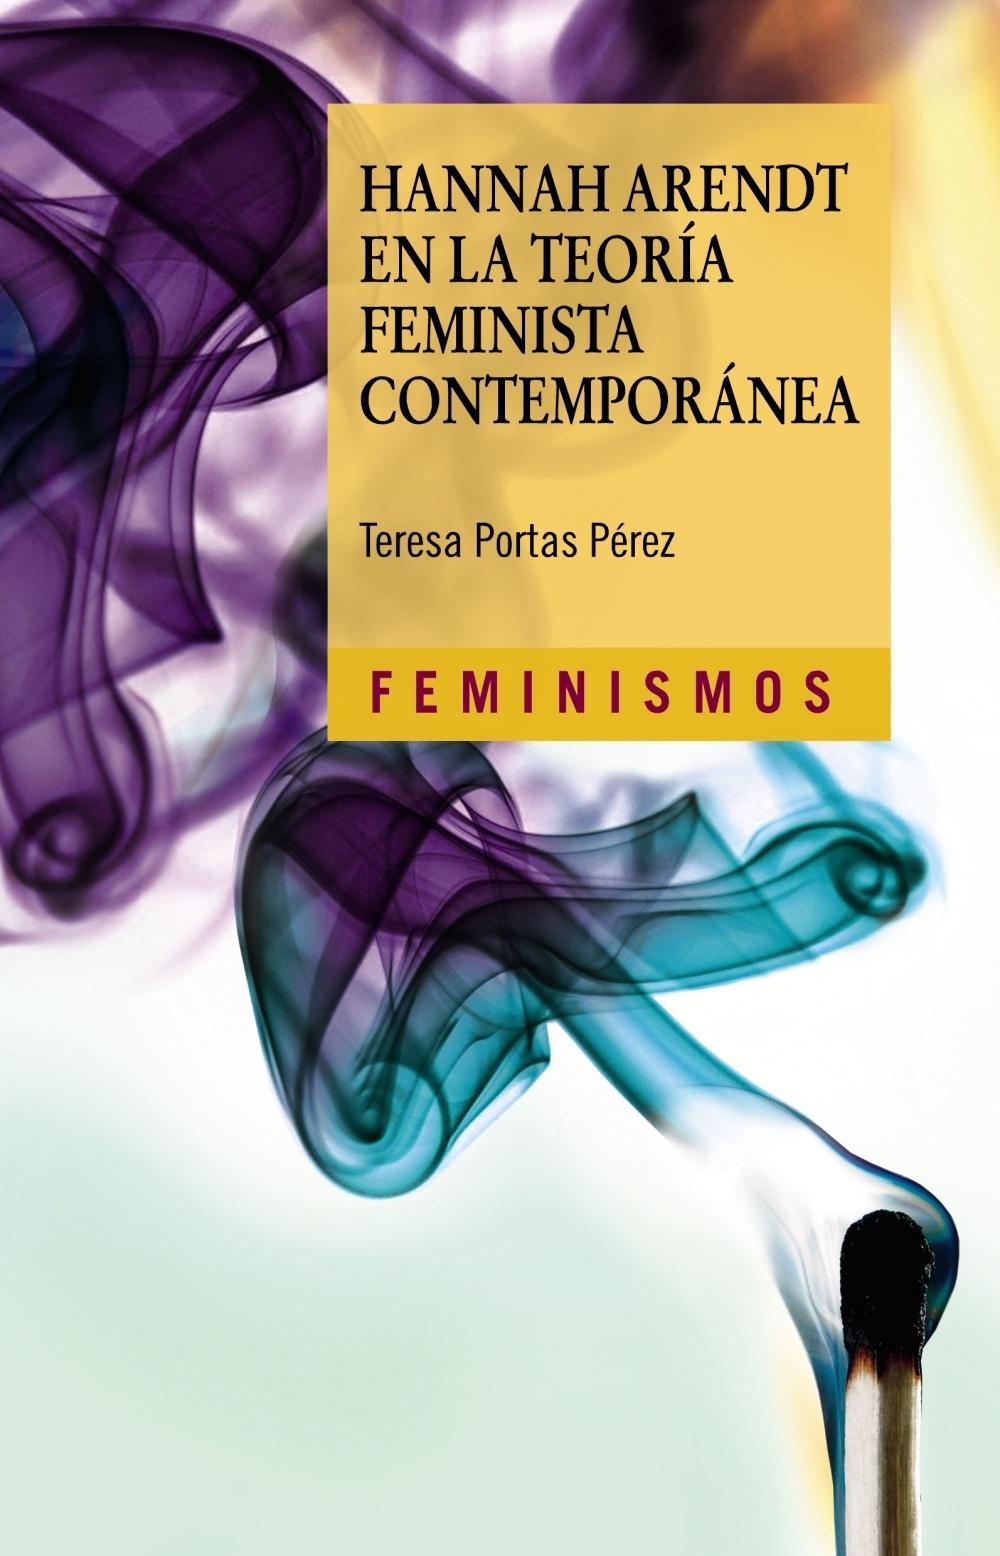 HANNAH ARENDT EN LA TEORÍA FEMINISTA CONTEMPORANEA